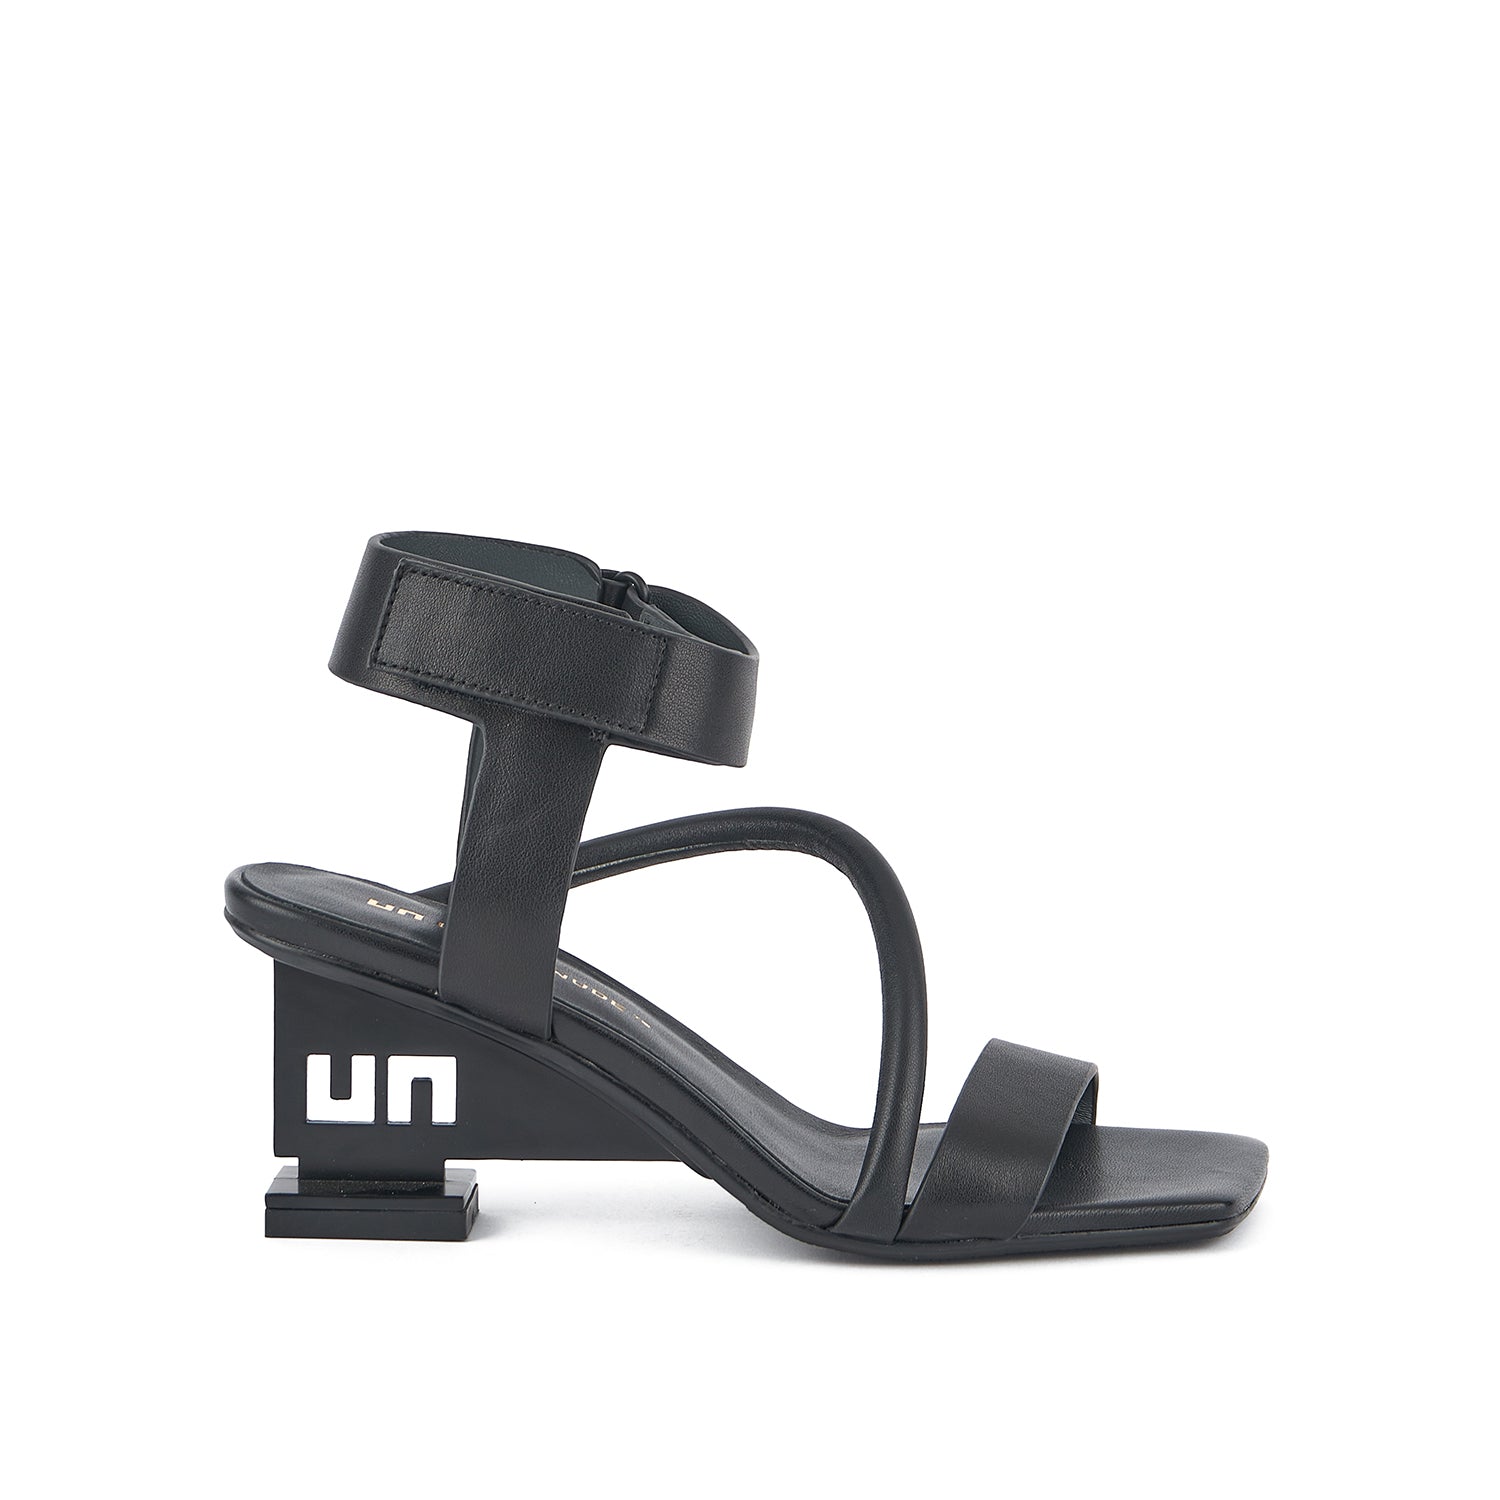 United Nude UN Sandal Mid - Black